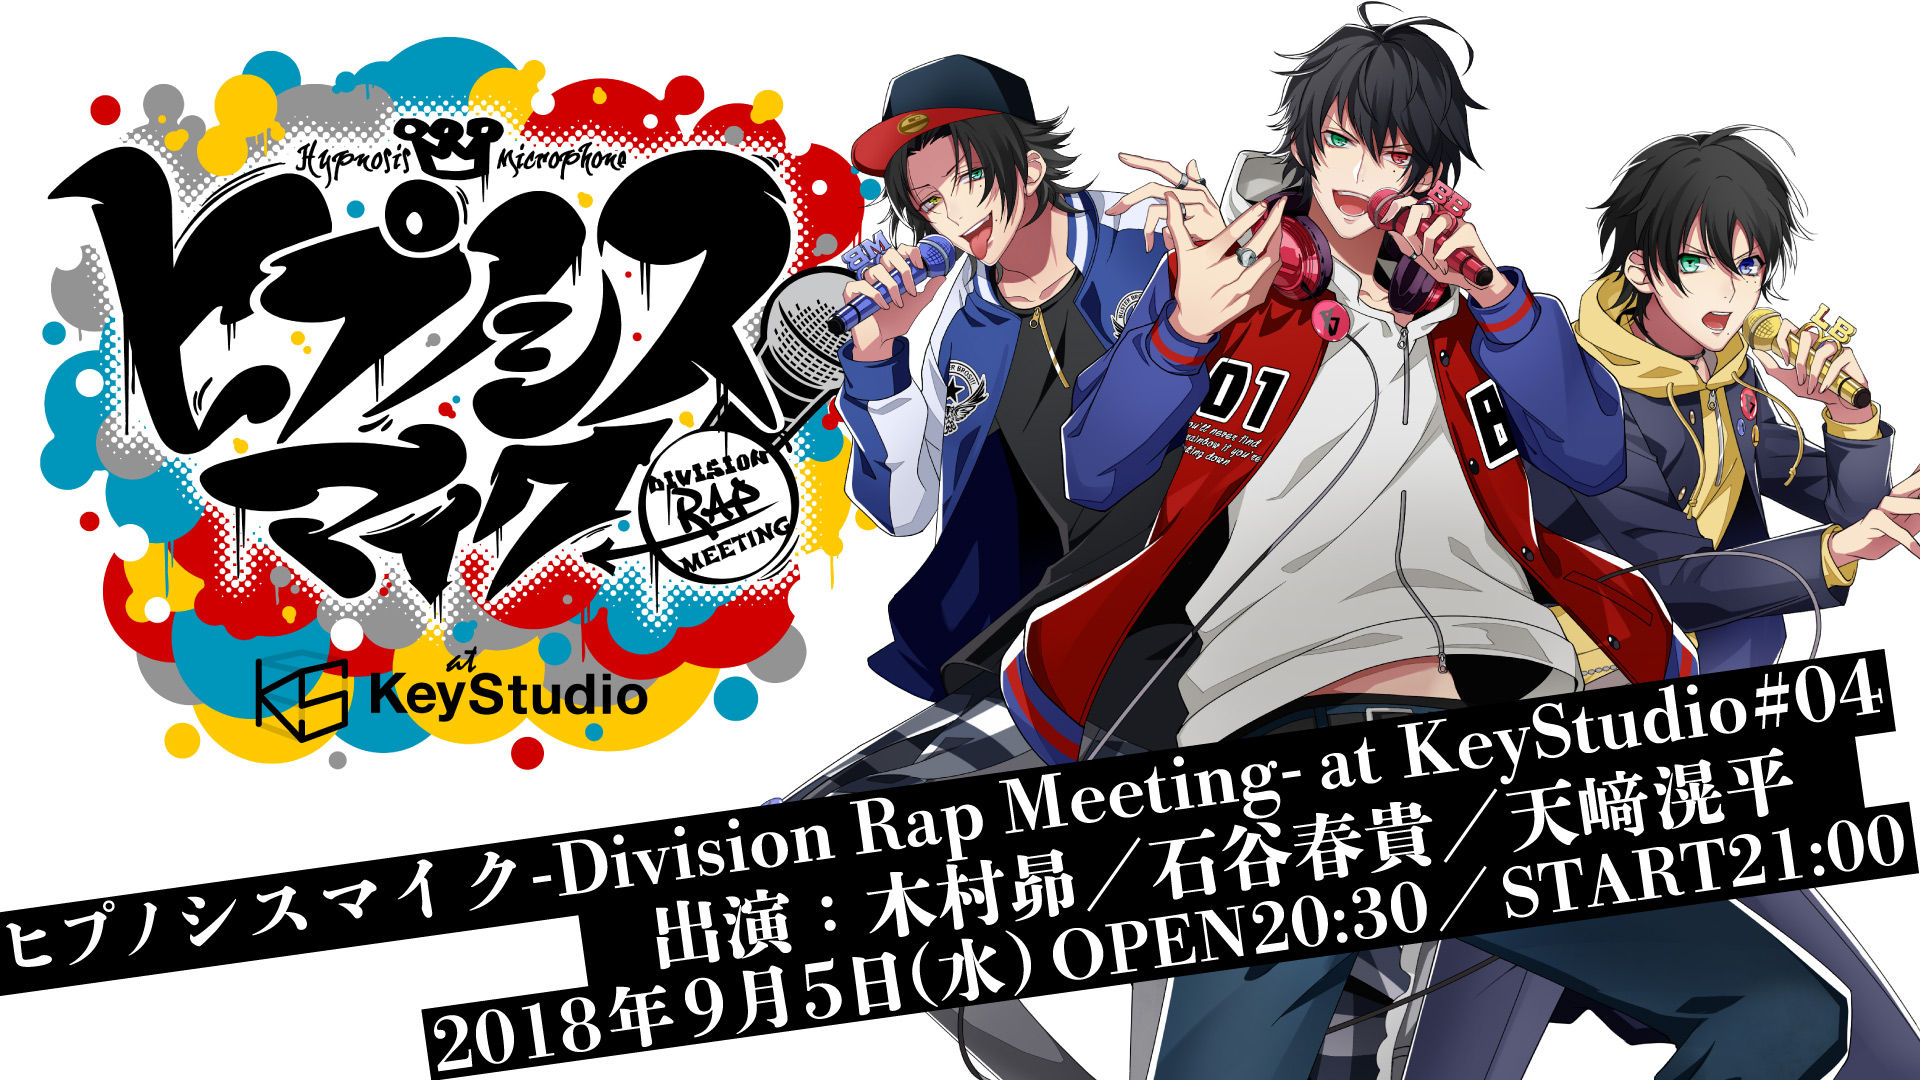 ヒプノシスマイク -Division Rap Meeting- at KeyStudio #04